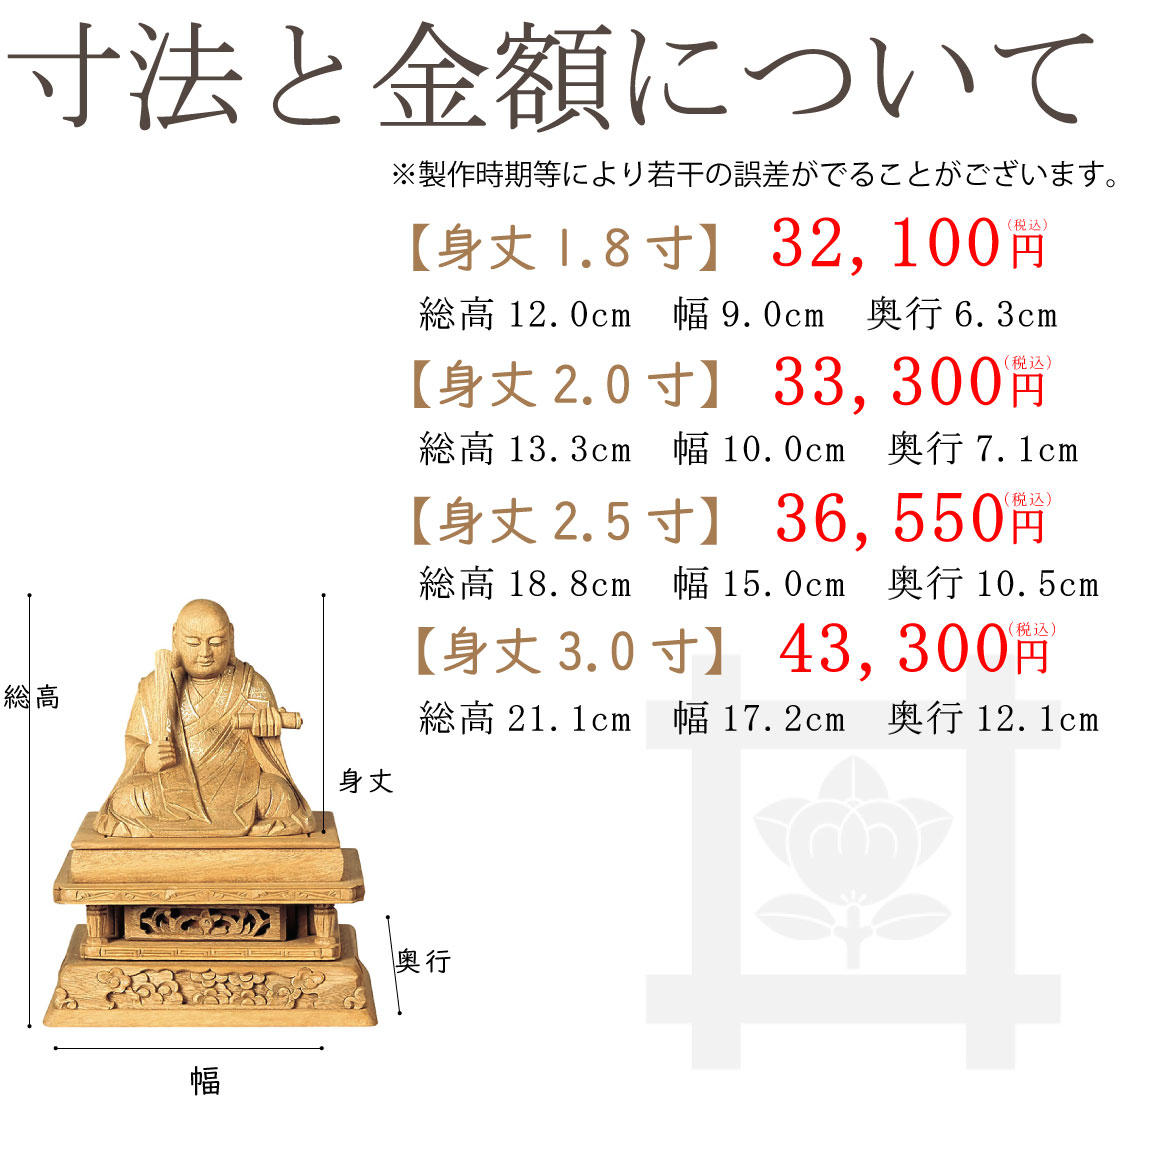 【日蓮宗】総楠　日蓮聖人像（金泥書）のサイズと価格